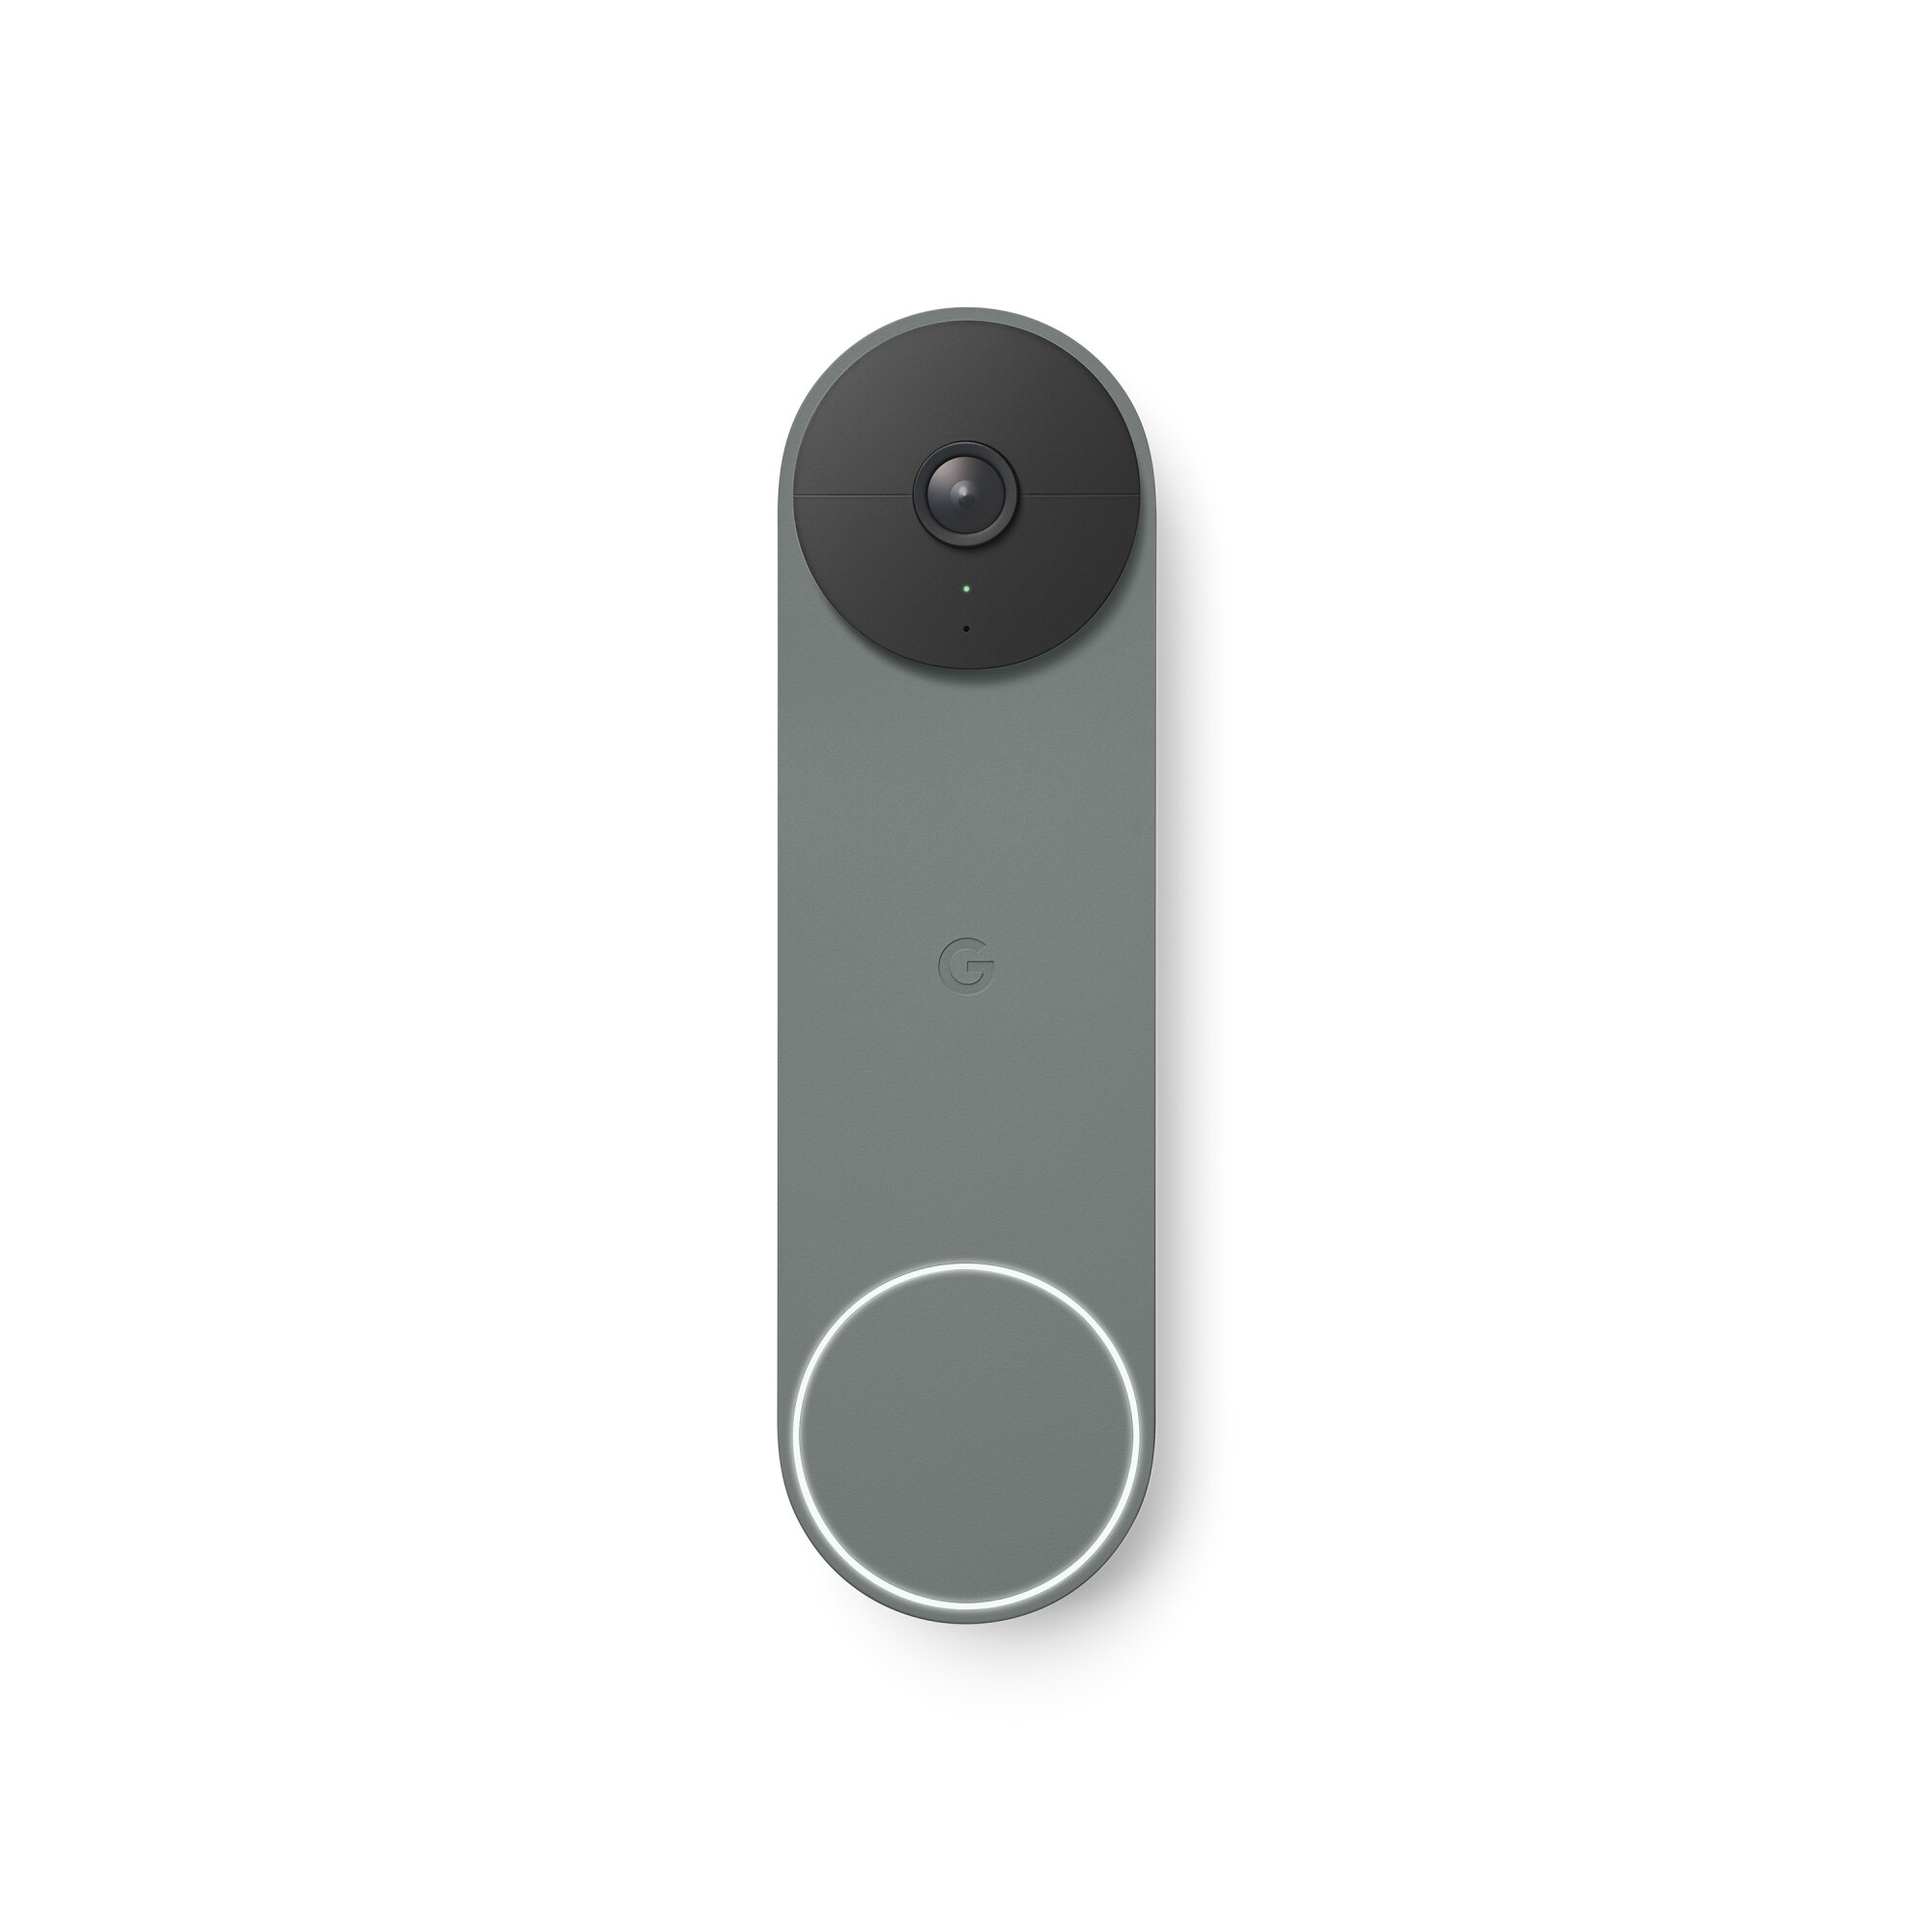 GIFT GUIDE - TECH: Google Nest Hello video doorbell